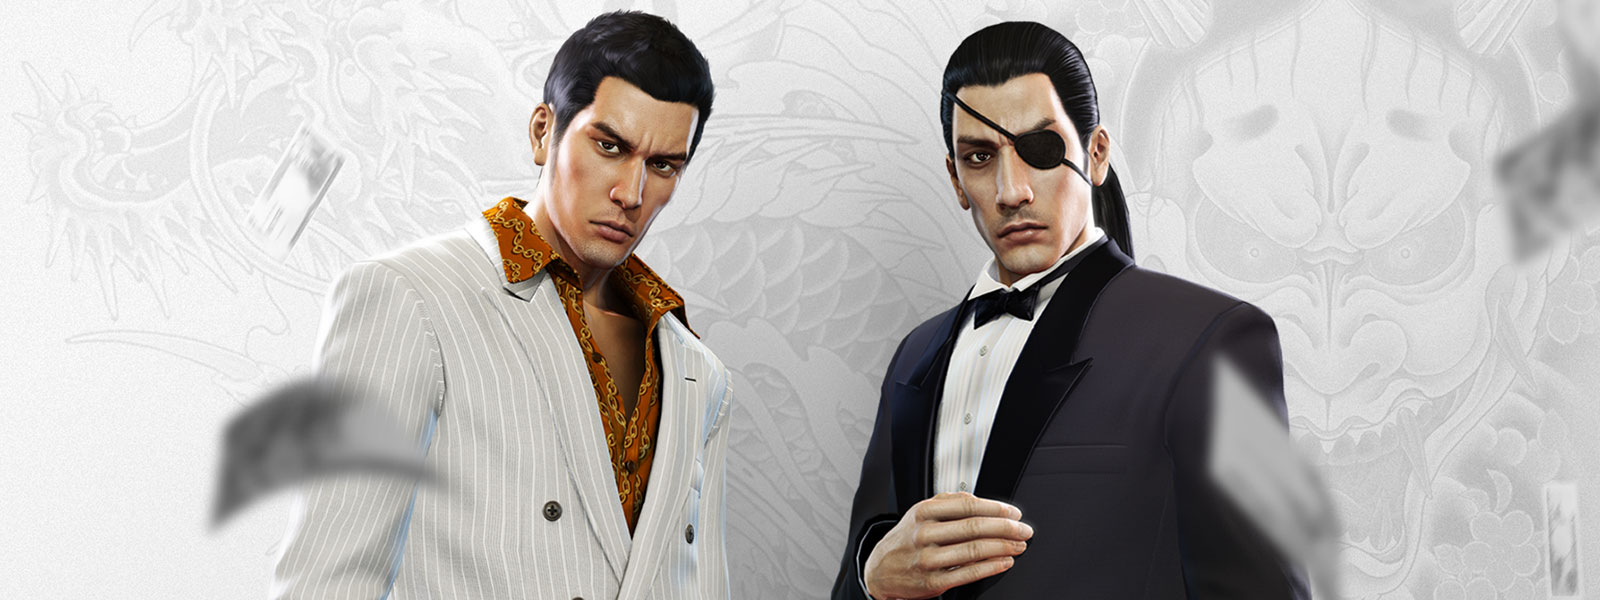 Deux personnages Yakuza en costumes fantaisie regardant lʼargent tomber autour dʼeux, avec un tatouage de dragon blanc et gris en arrière-plan